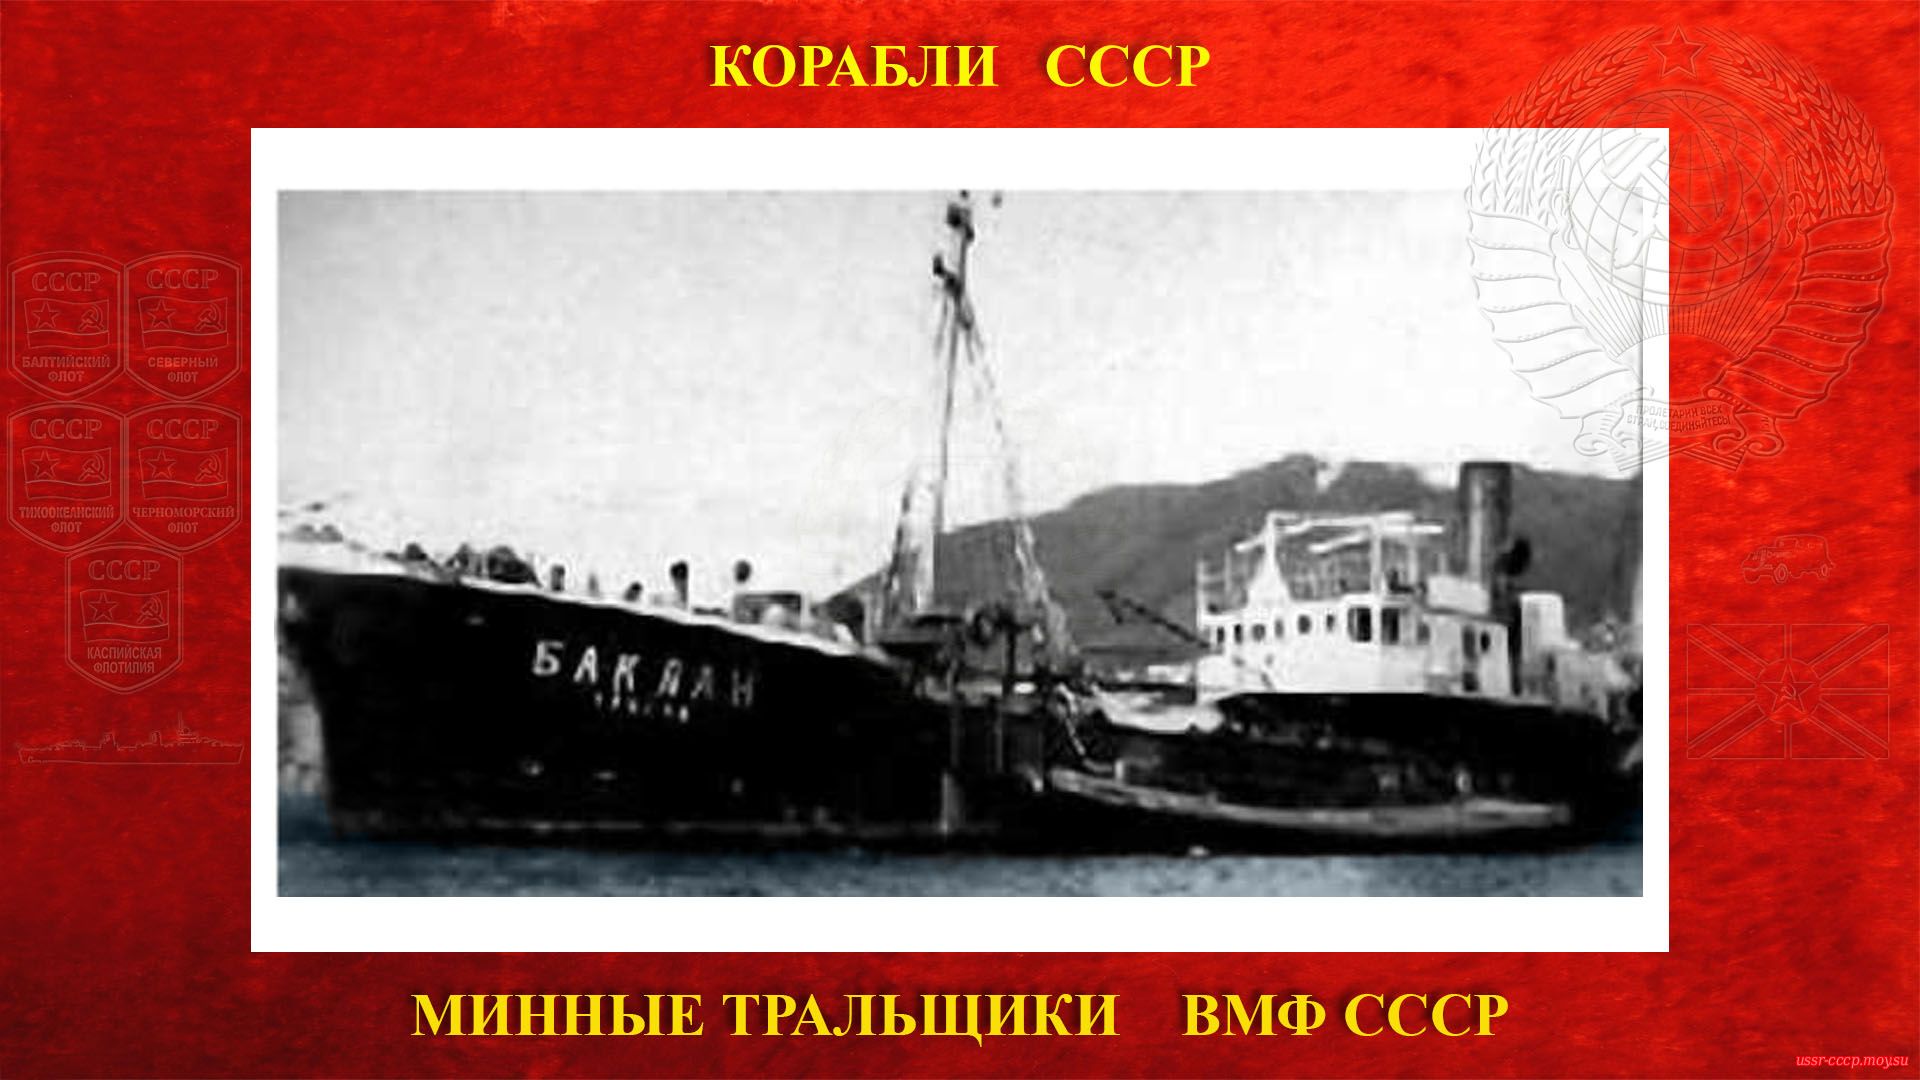 Т-14 (Баклан) — Советский минный тральщик ВМФ СССР